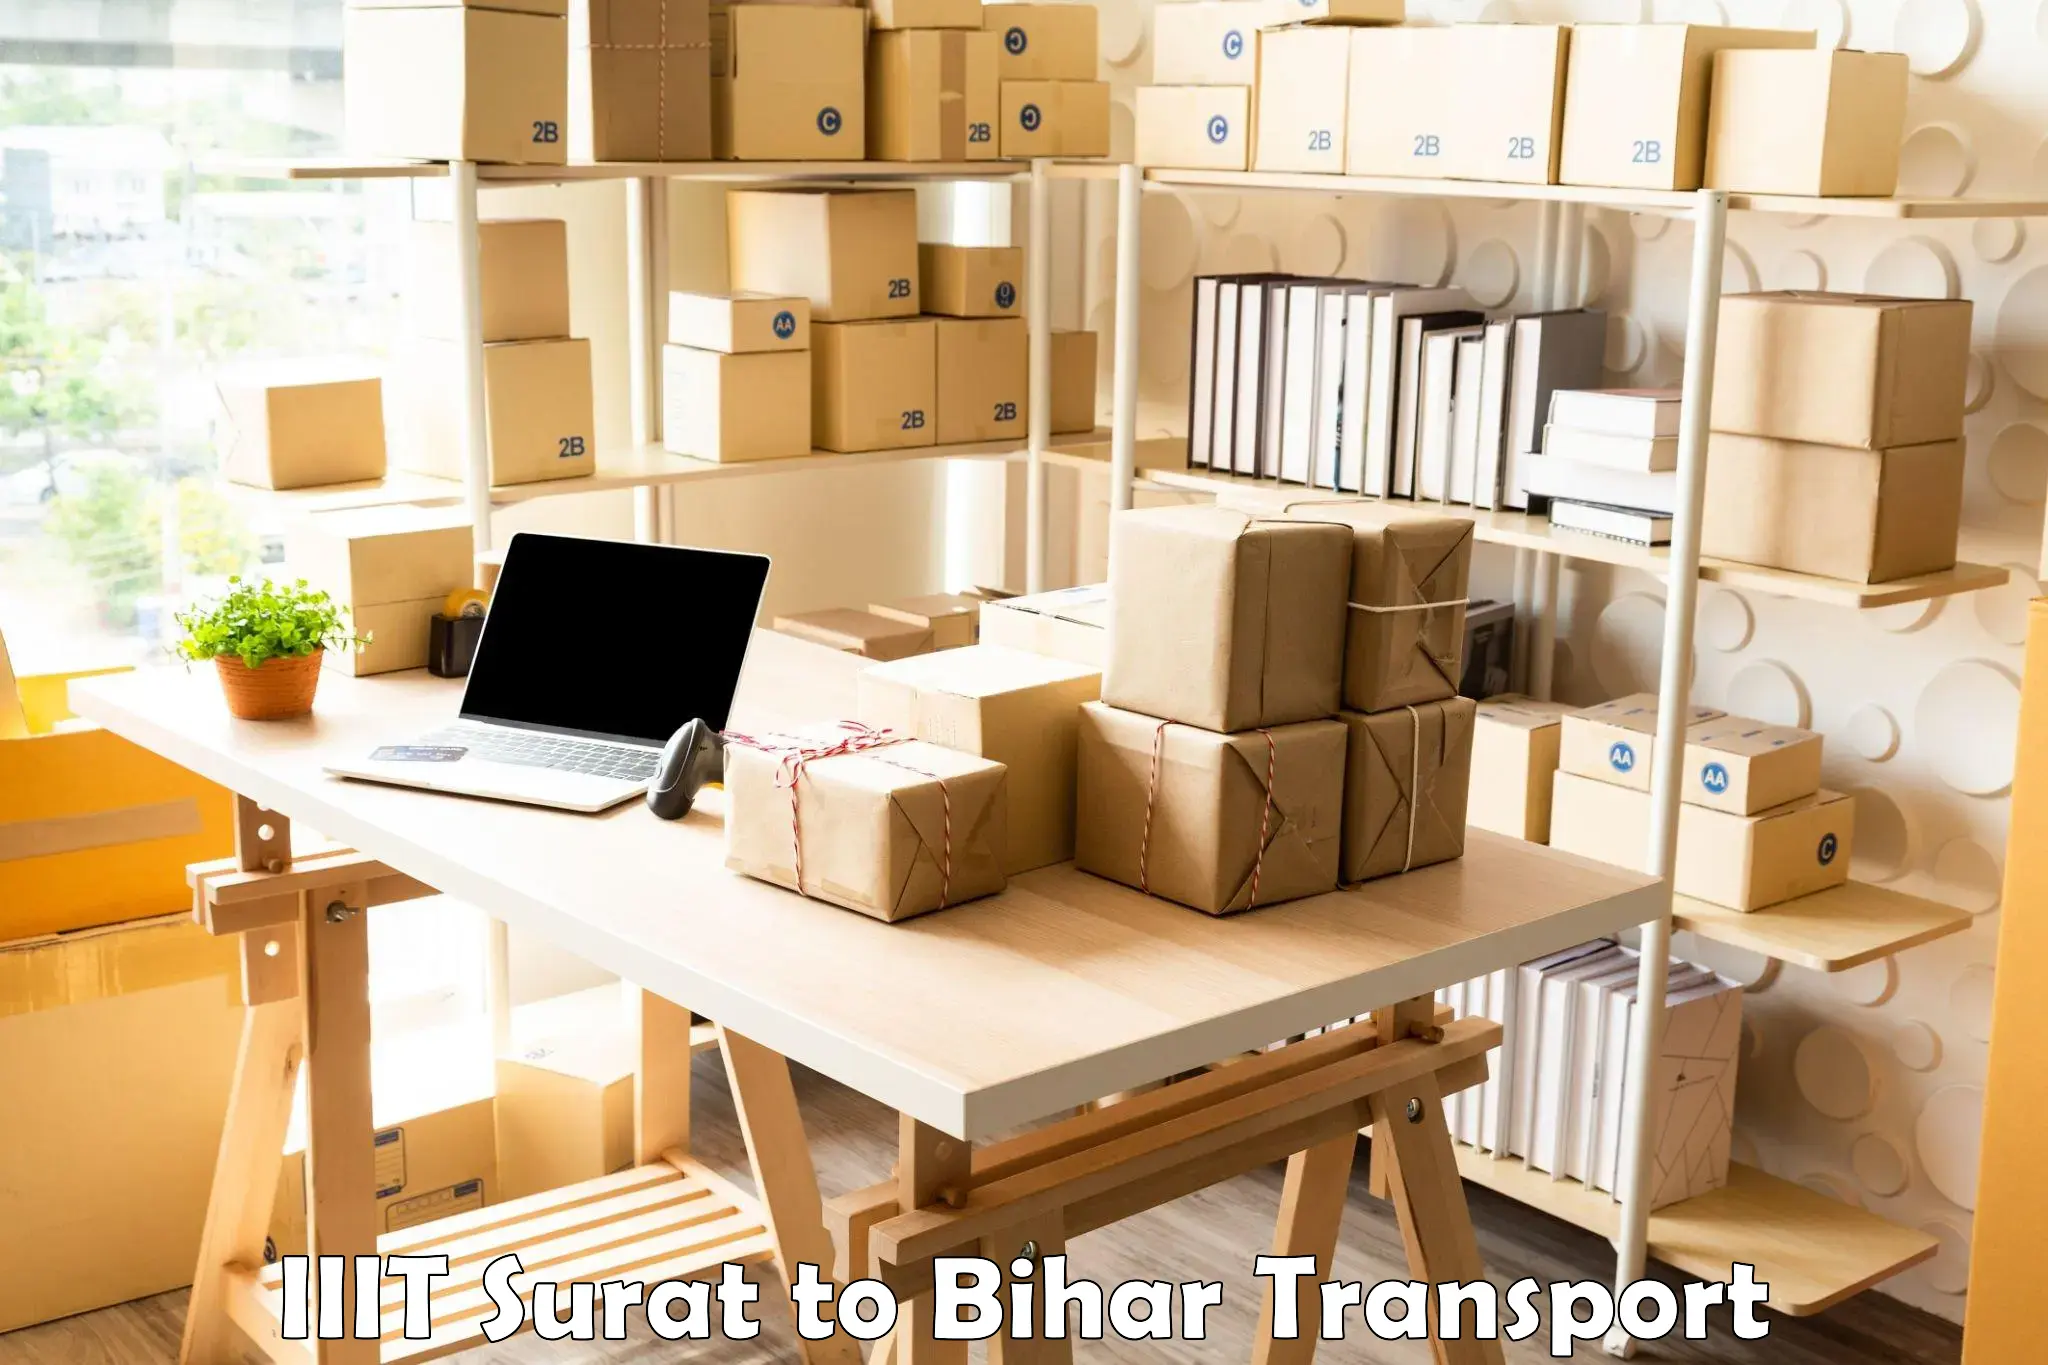 Road transport online services IIIT Surat to Bihar